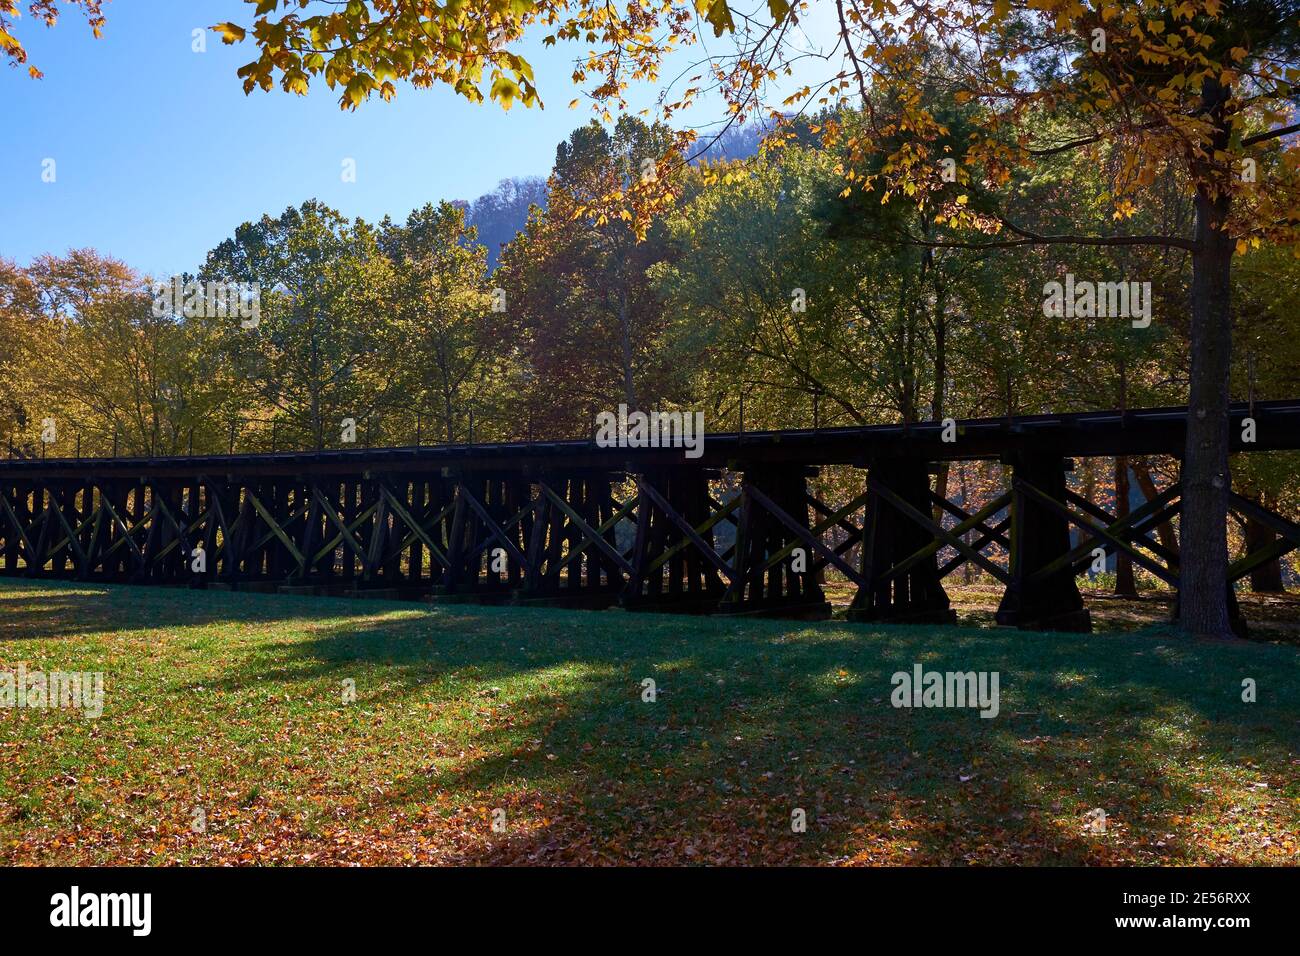 La piste de chemin de fer en bois surélevée pour l'ancienne route Winchester & Potomac, maintenant CSX. En automne, à Harpers Ferry, Virginie-Occidentale. Banque D'Images